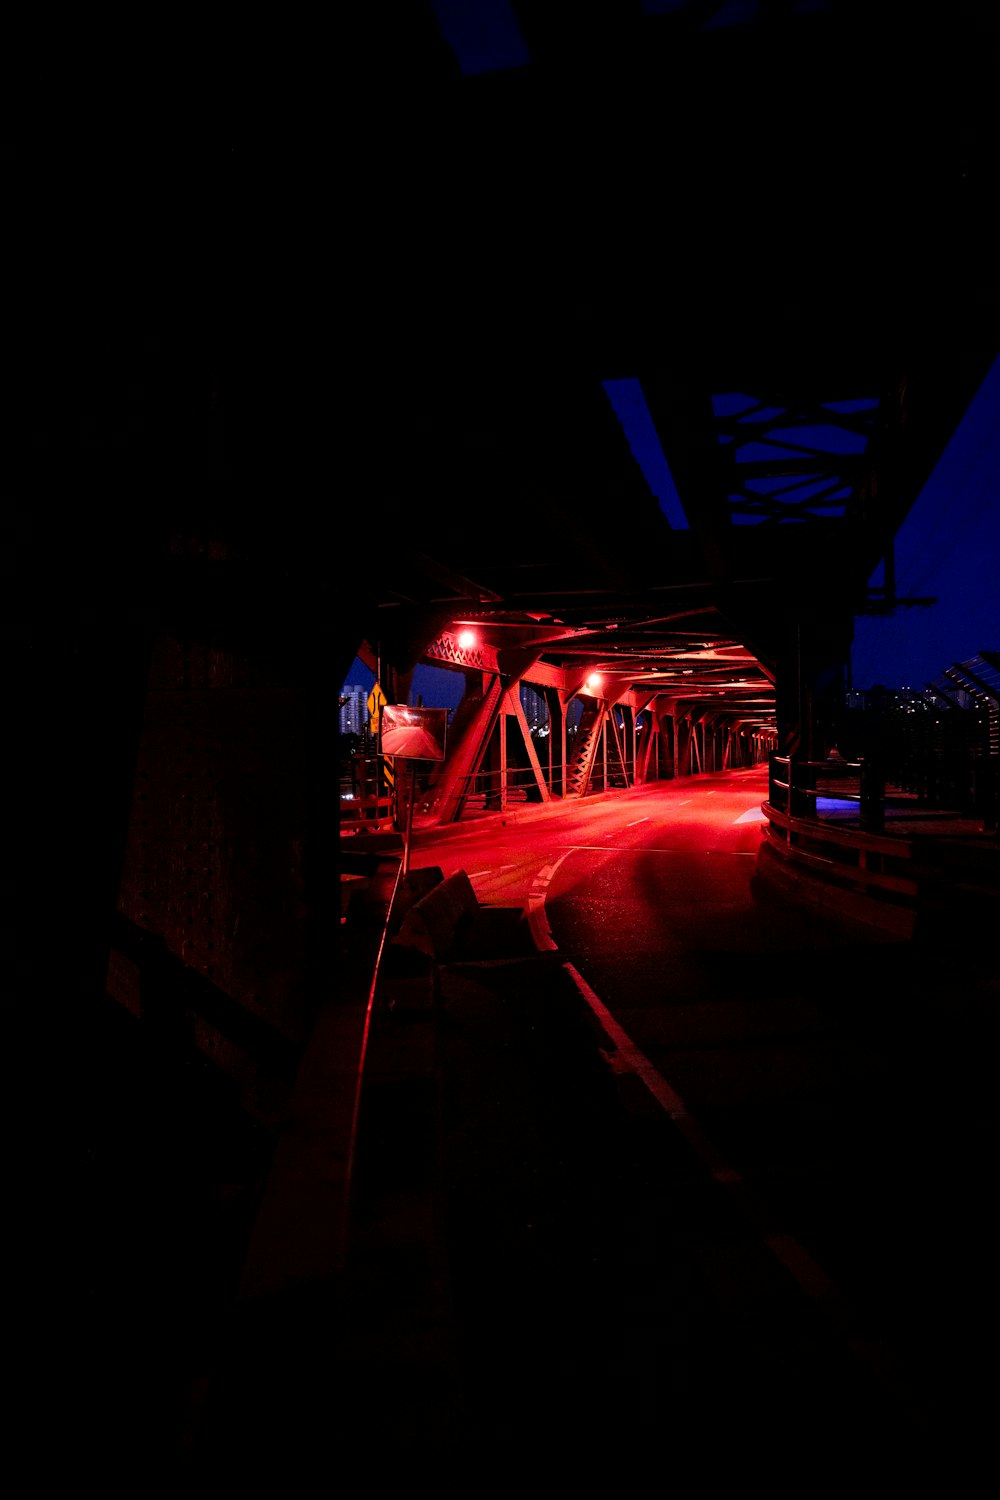 Nachts leuchtet ein rotes Licht auf eine Brücke